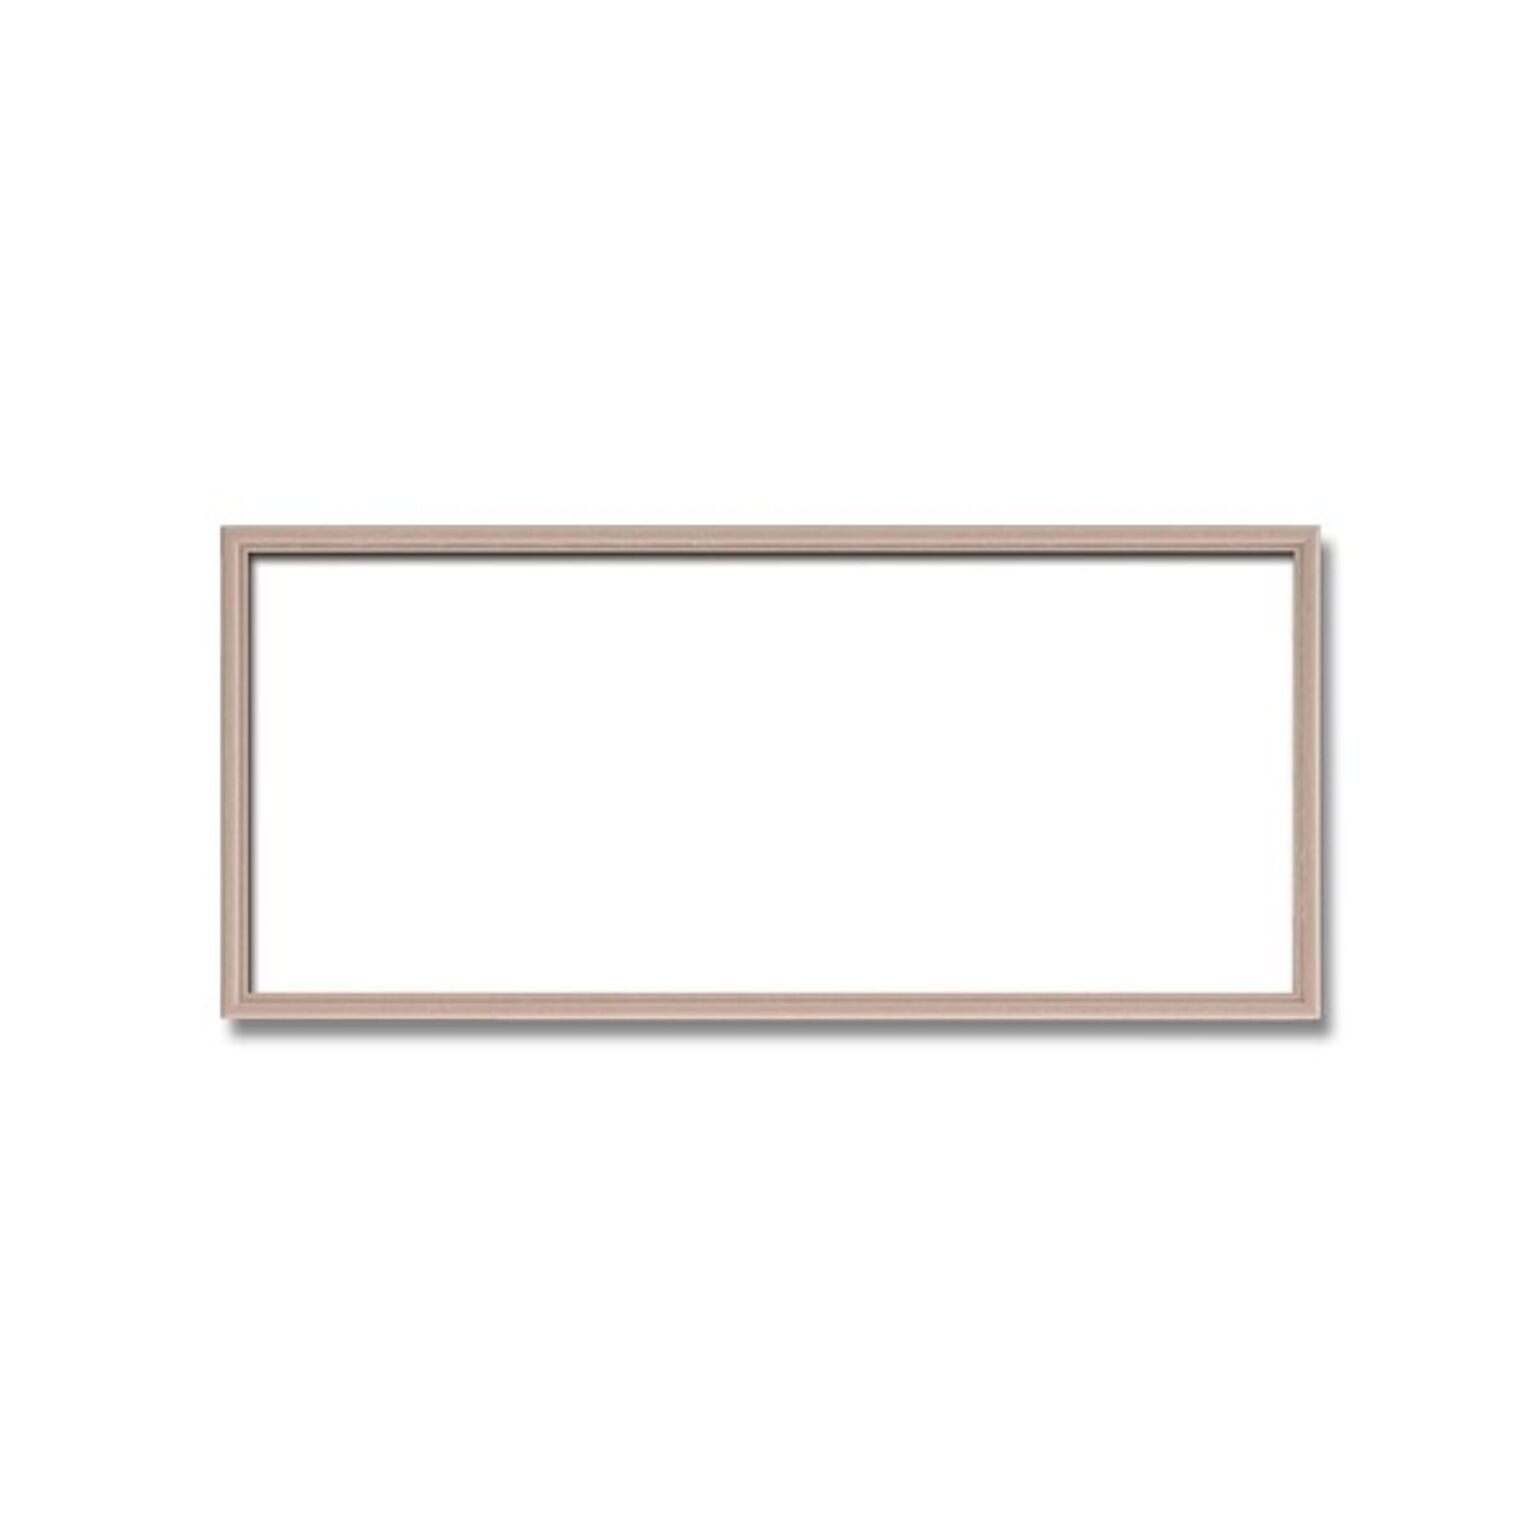 【長方形額】木製額 縦横兼用額 カラー4色展開 ■カラー長方形額（500×250mm） ピンクベージュ